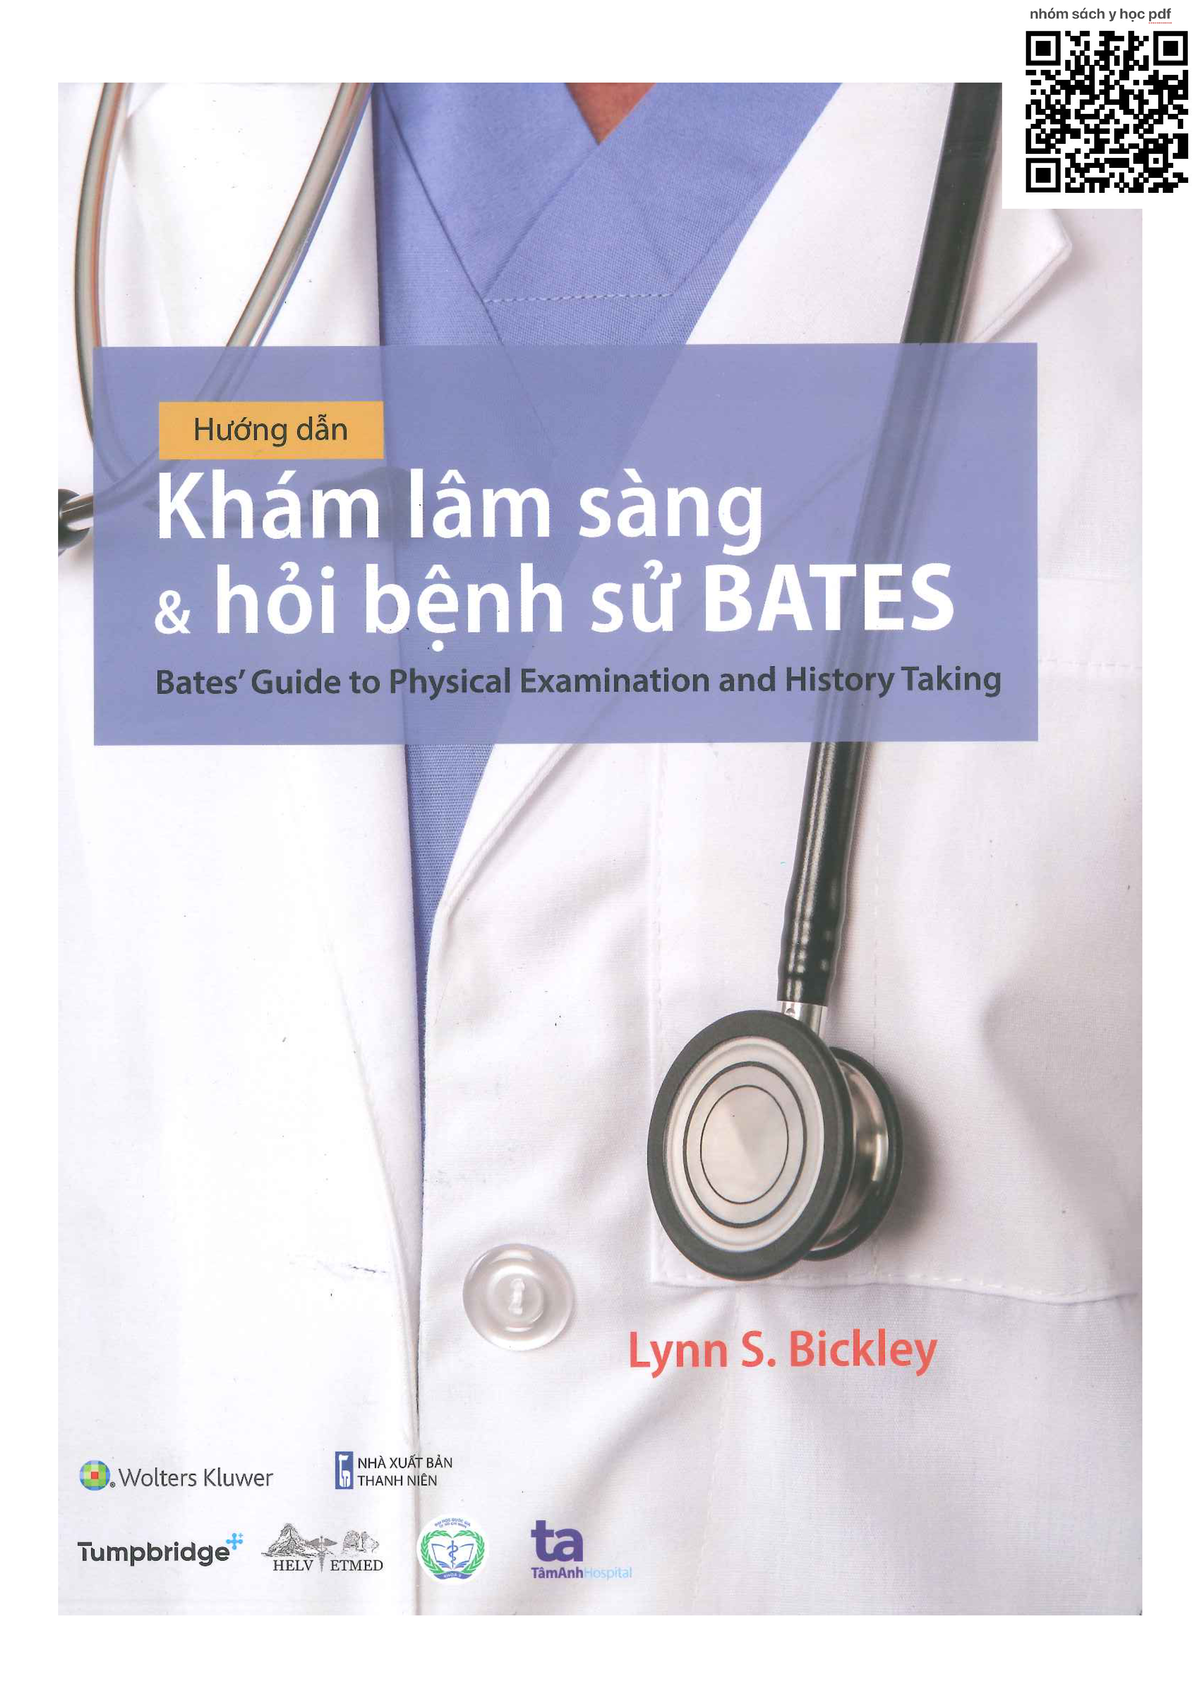 Quy trình khám lâm sàng và hỏi bệnh sử theo phương pháp Bates như thế nào?
